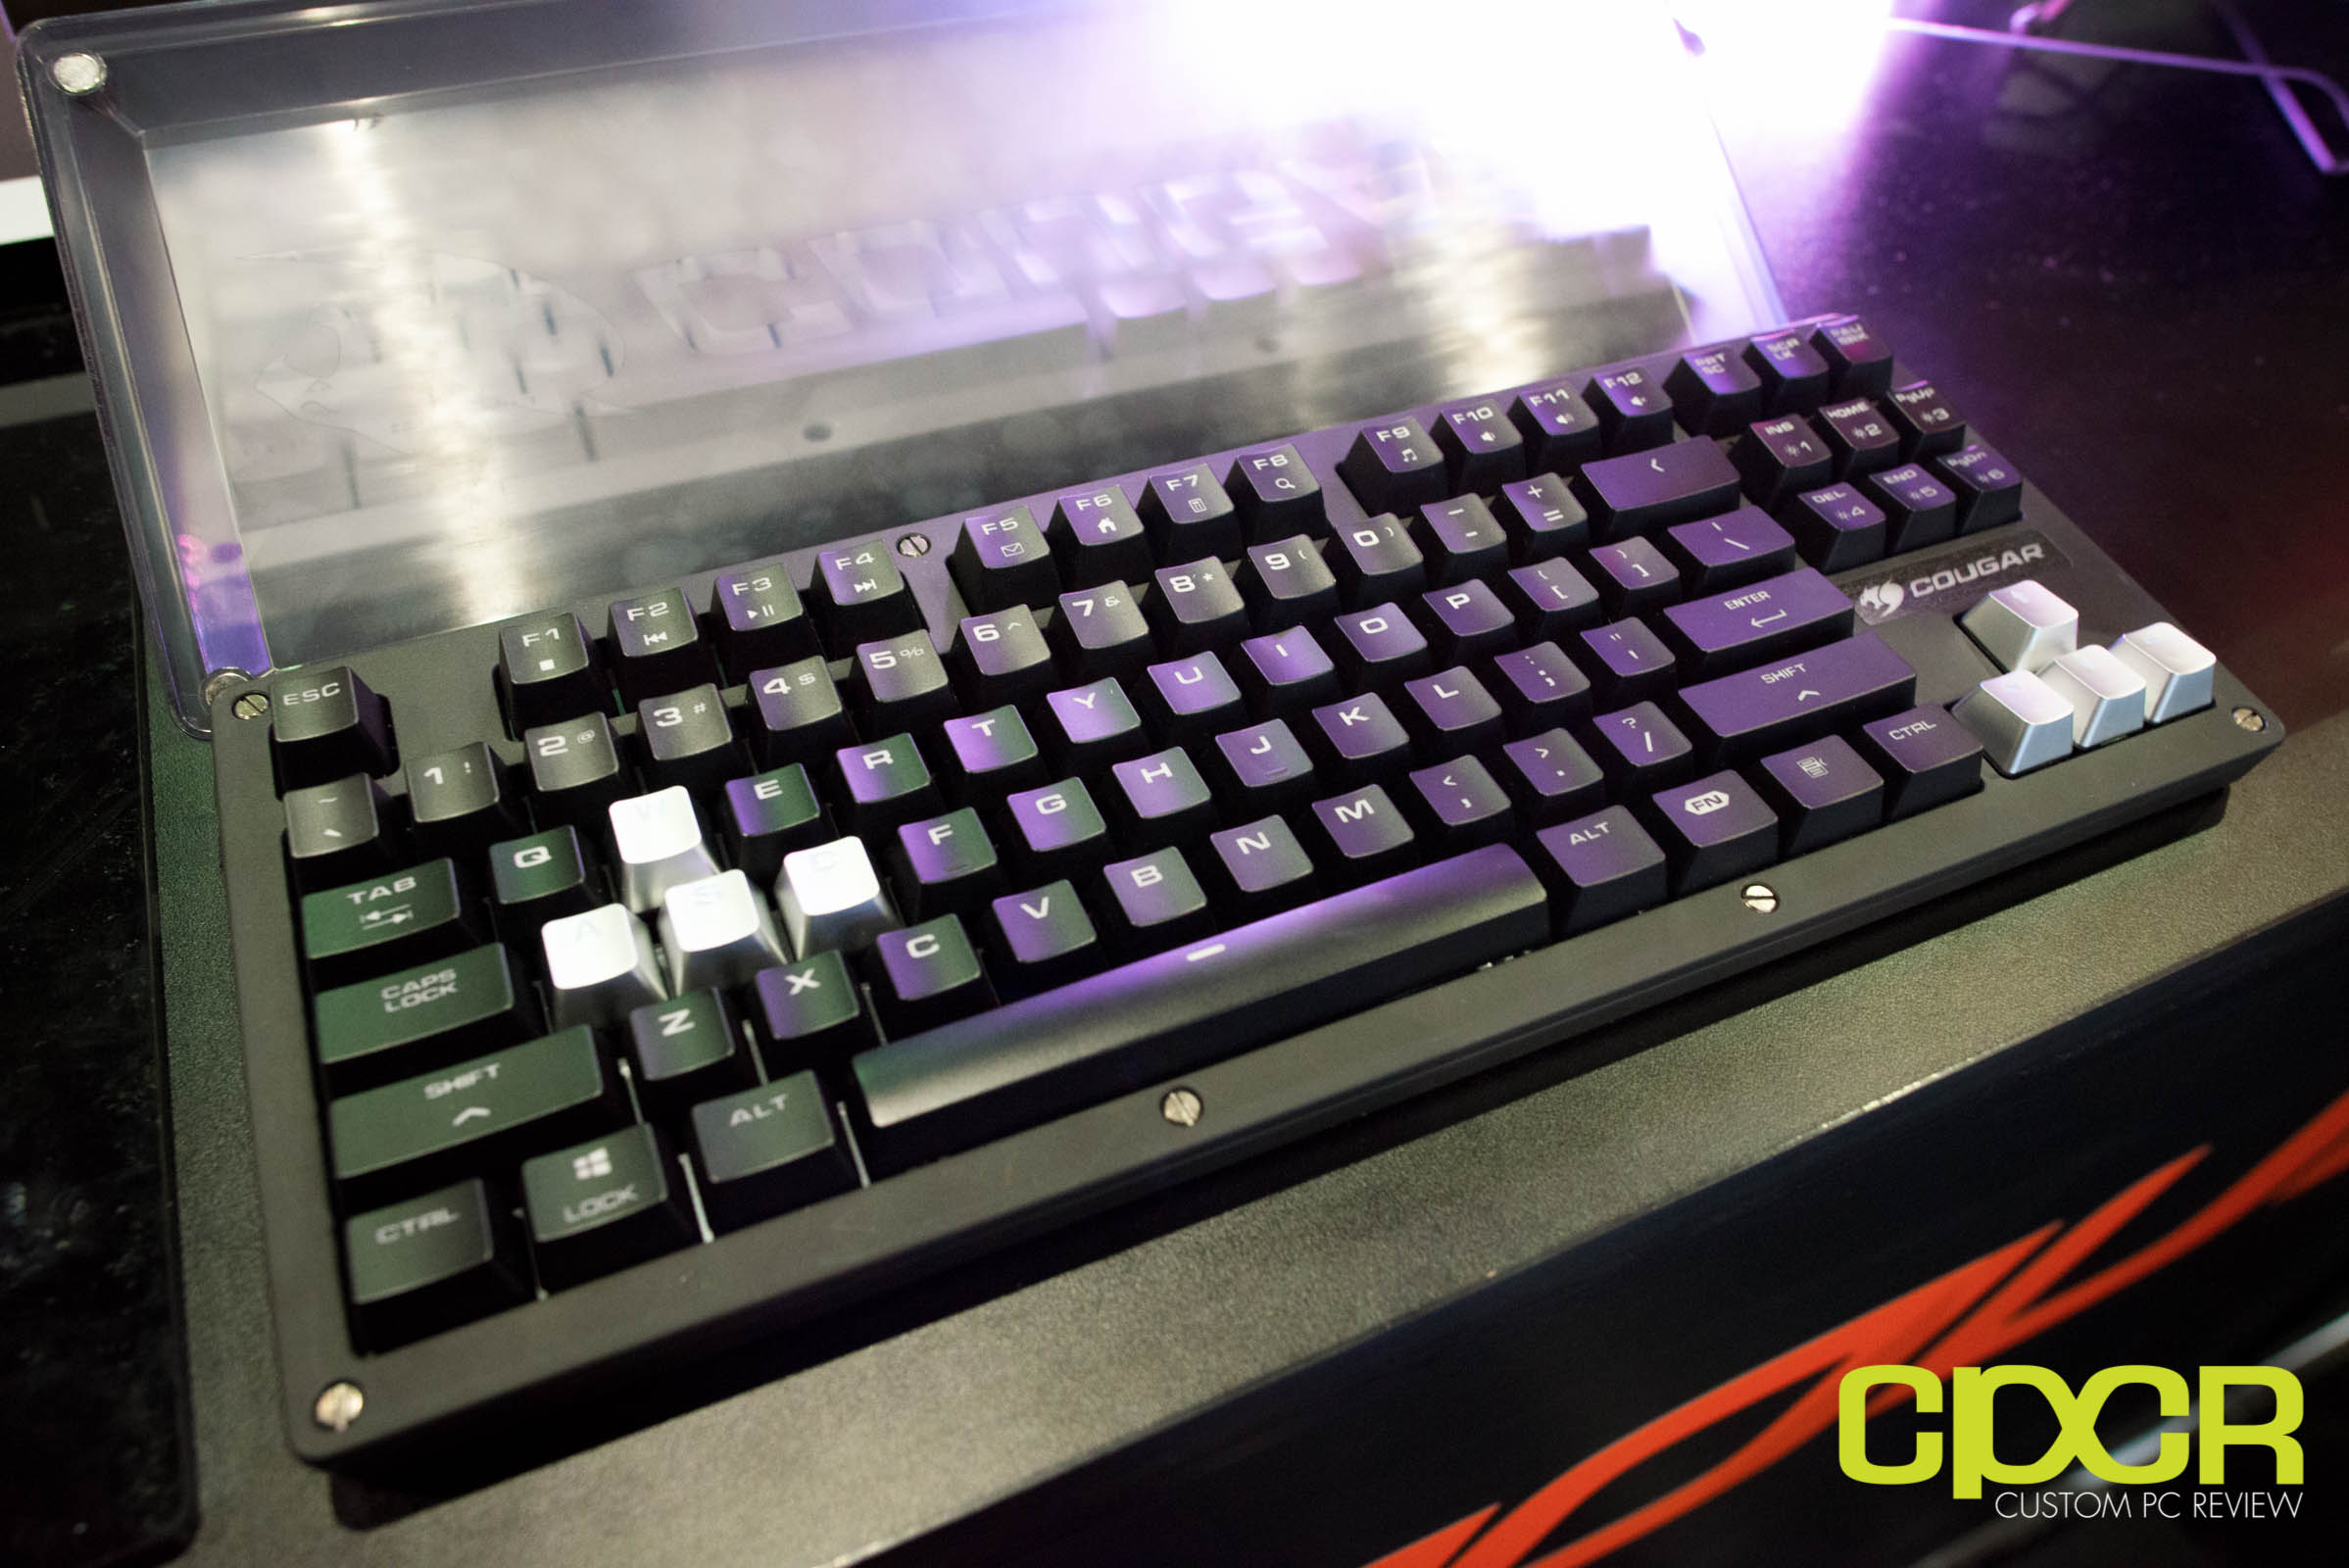 Cougar Displays New Gaming Keyboards at E3 2017